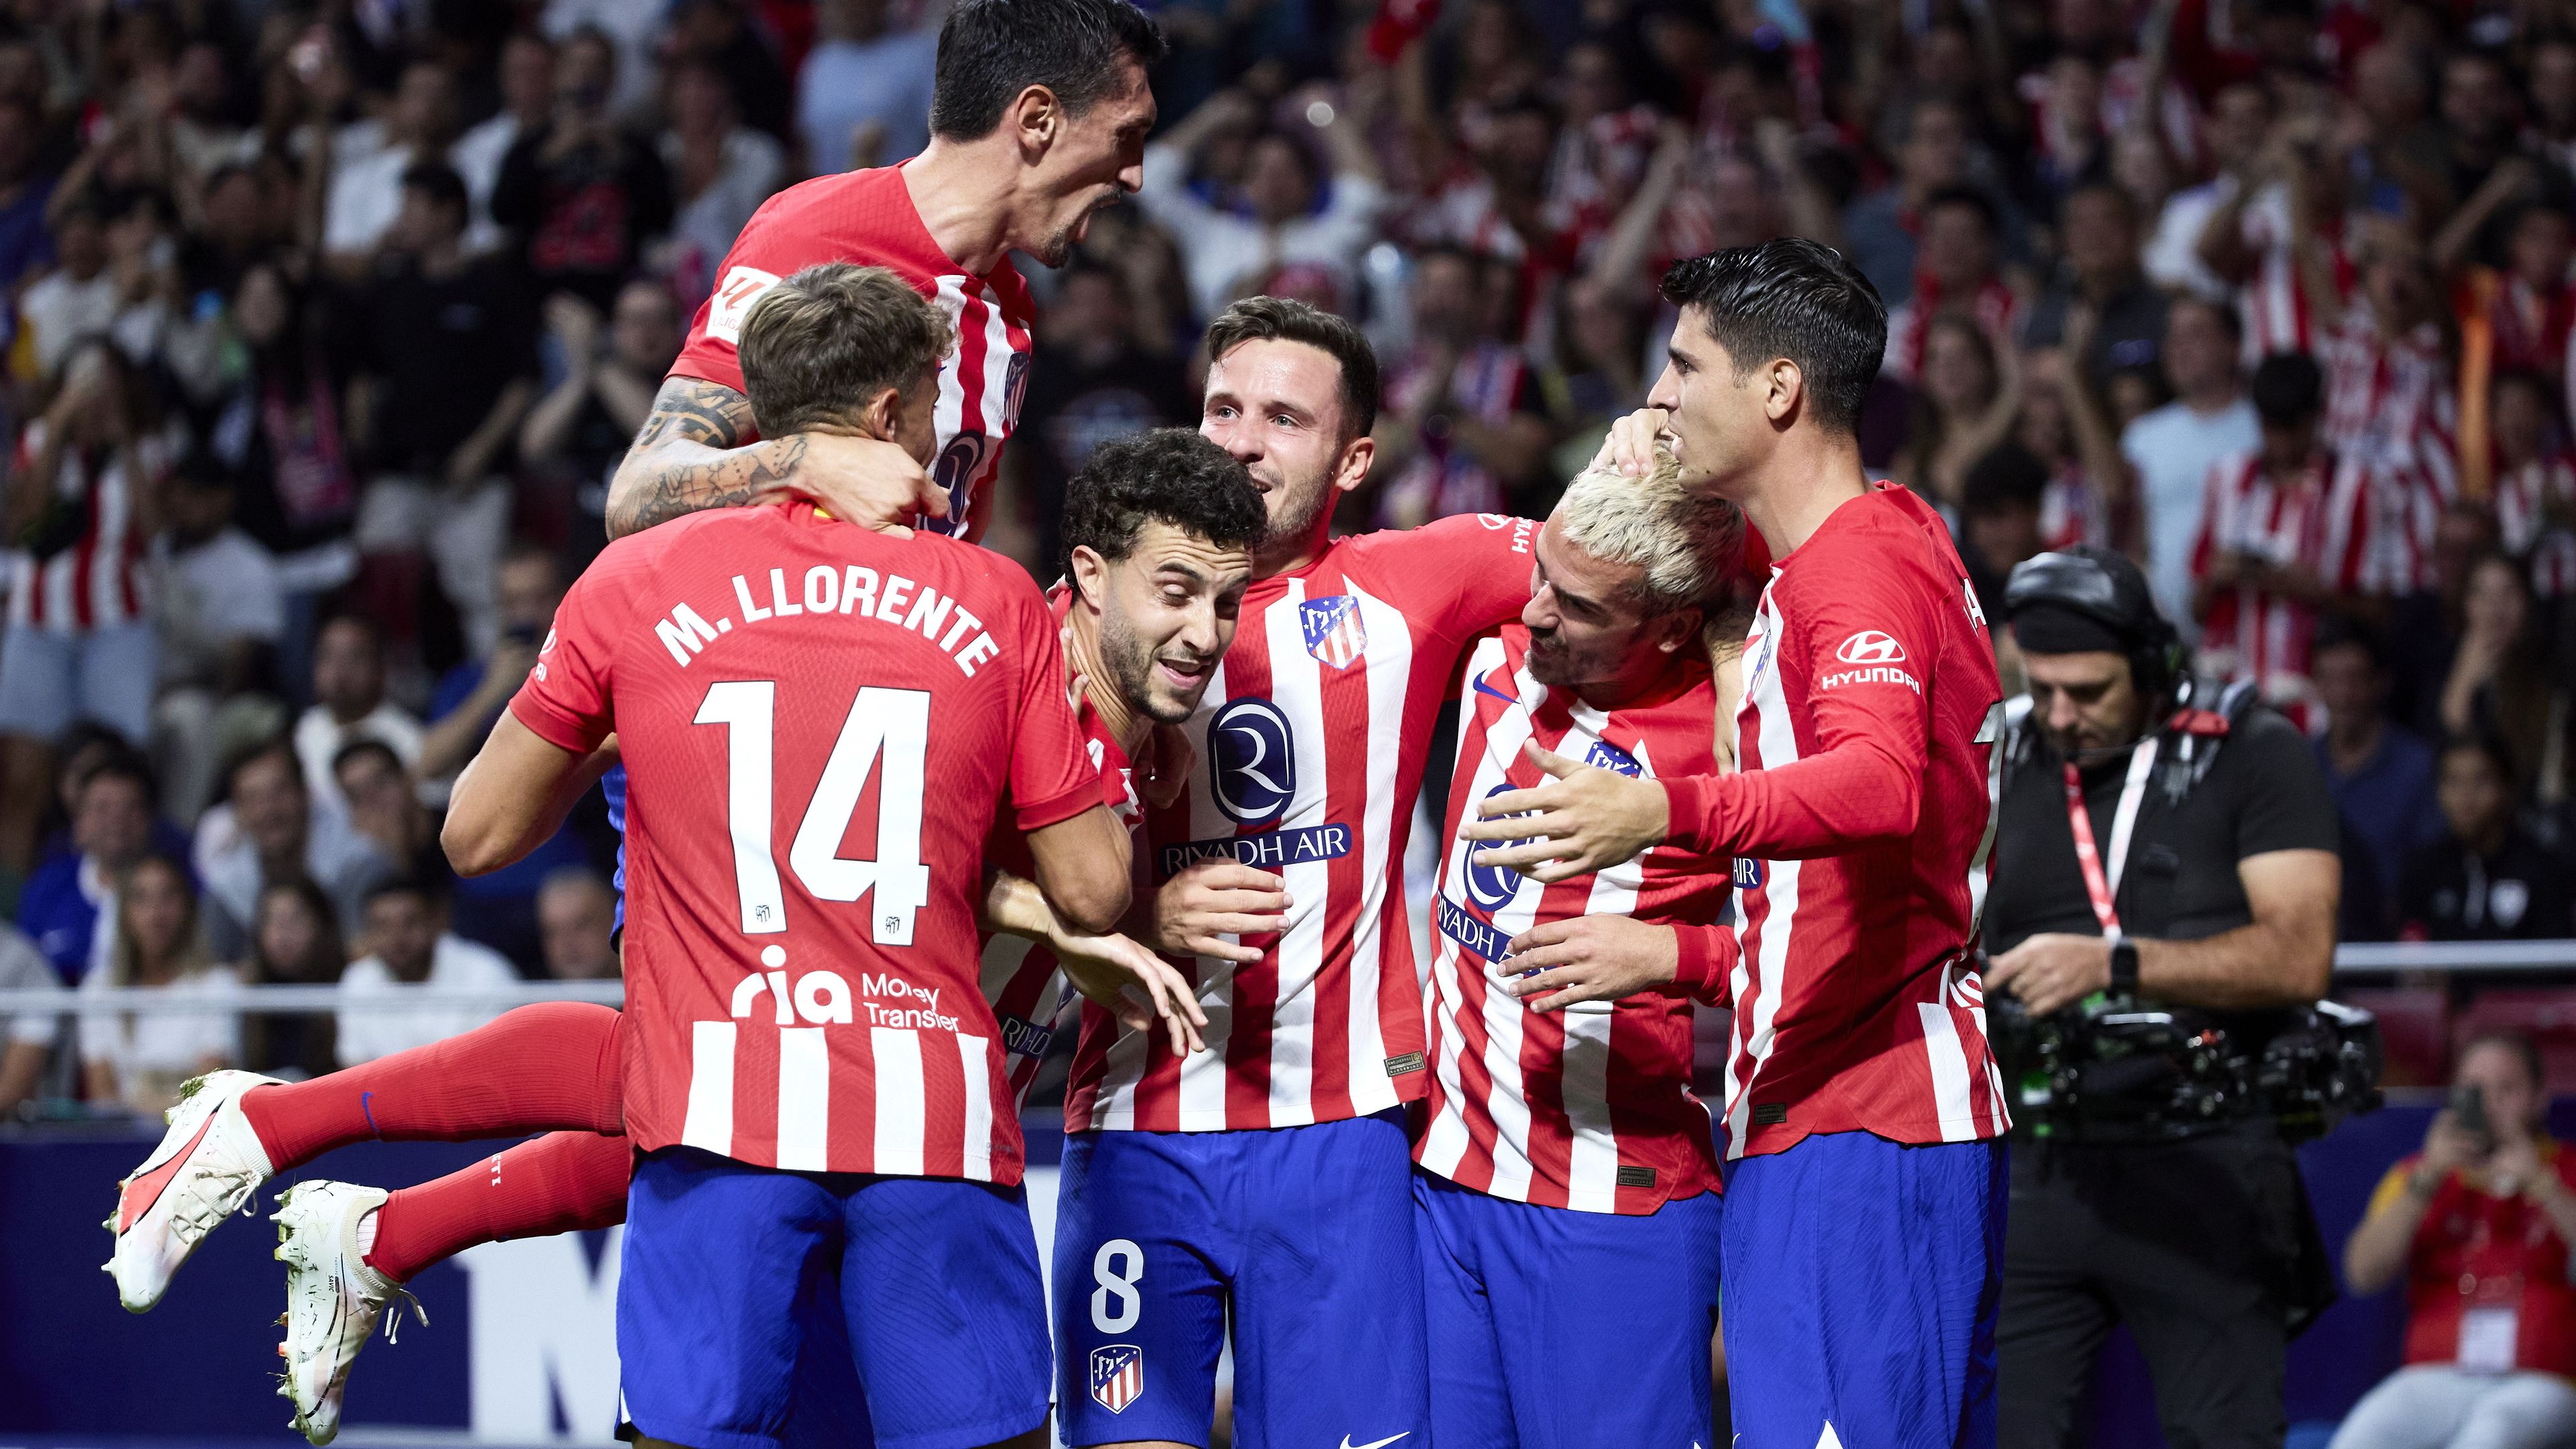 Puhány Real-játékosok, összetartó Atlético – edzői vélemények a spanyol derbi után